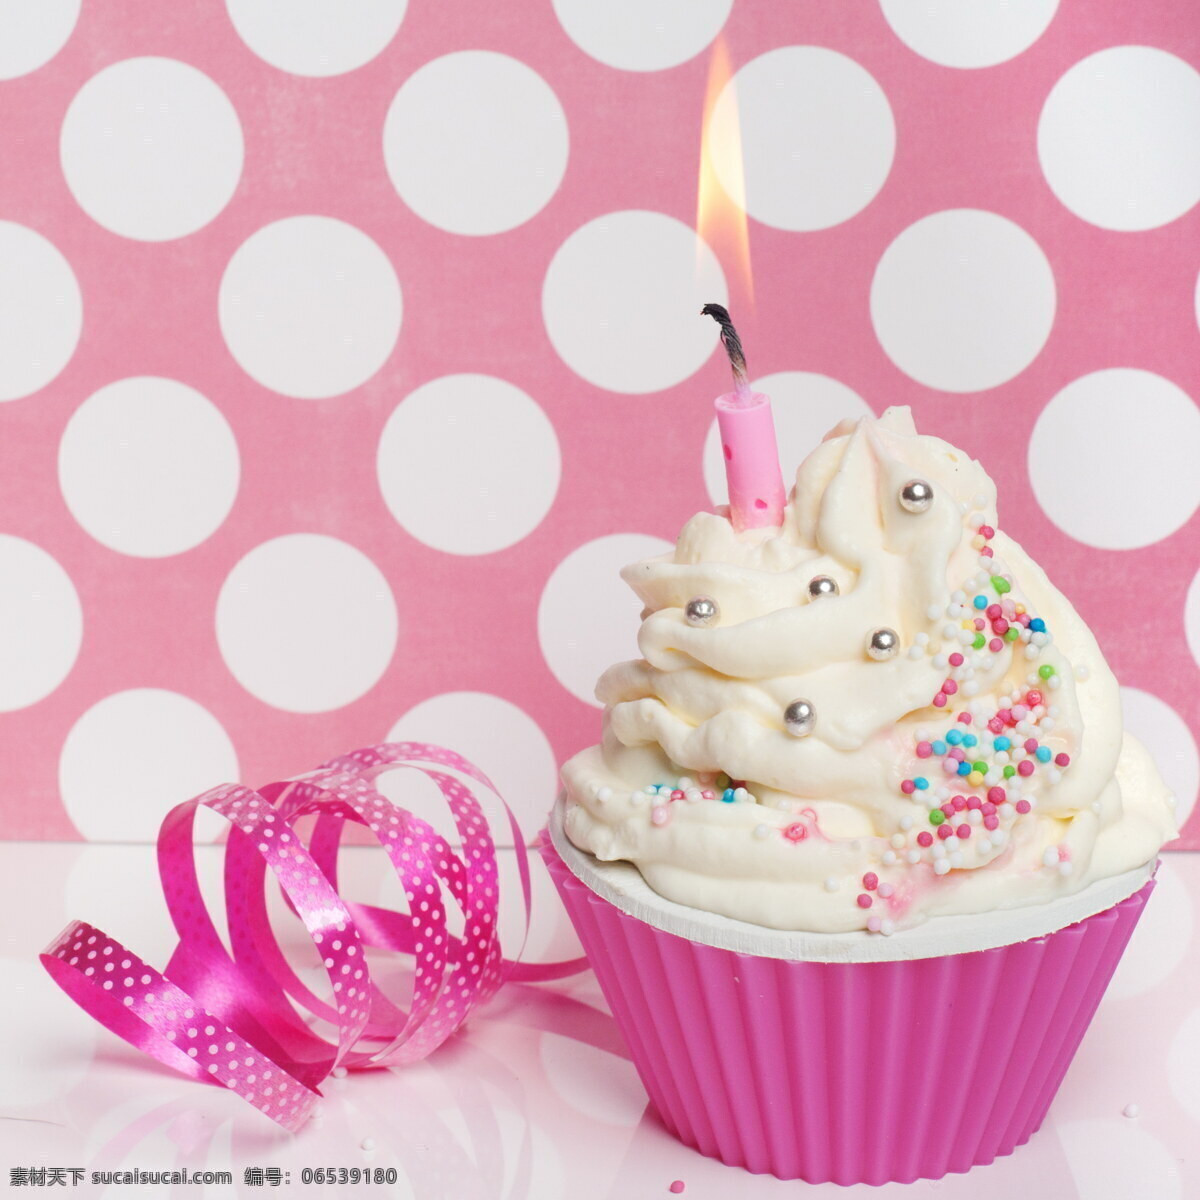 粉色蛋糕 粉色 蛋糕 糕点 奶油蛋糕 生日蛋糕 花朵 彩色蛋糕 盘子 蜡烛 其他类别 餐饮美食